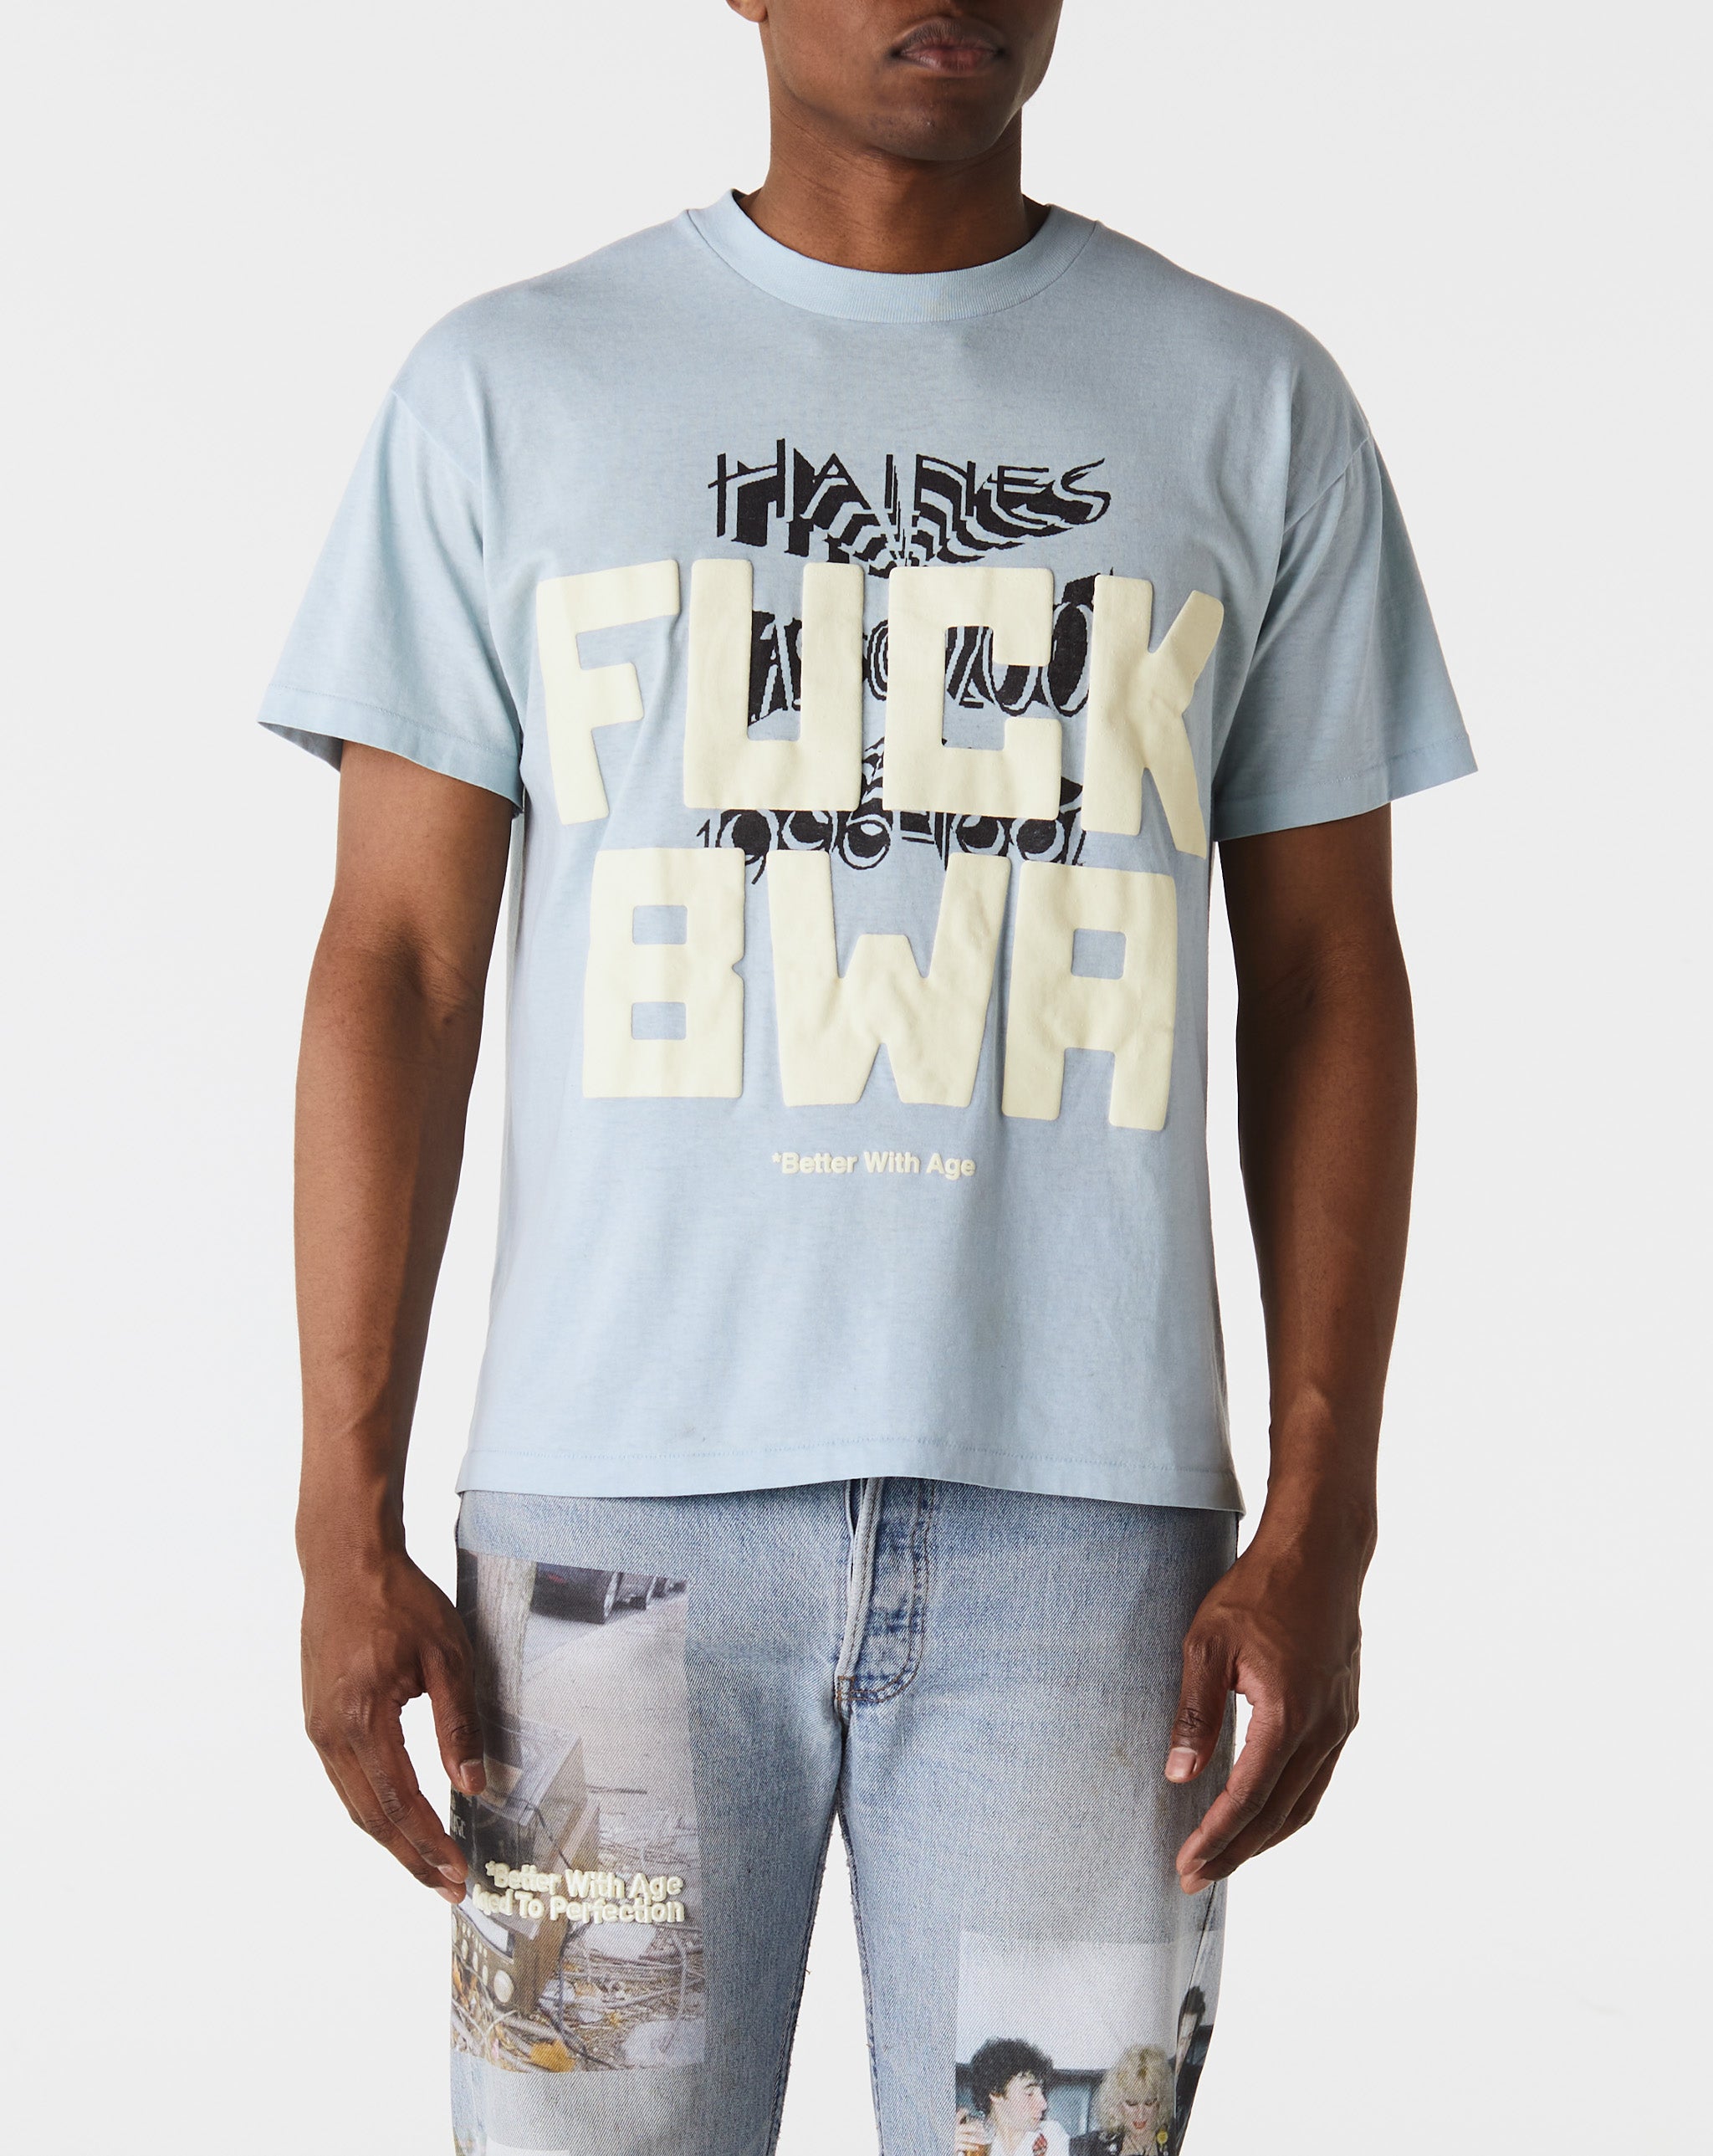 *Better With Age Fuck BWA T-Shirt  - Cheap Erlebniswelt-fliegenfischen Jordan outlet